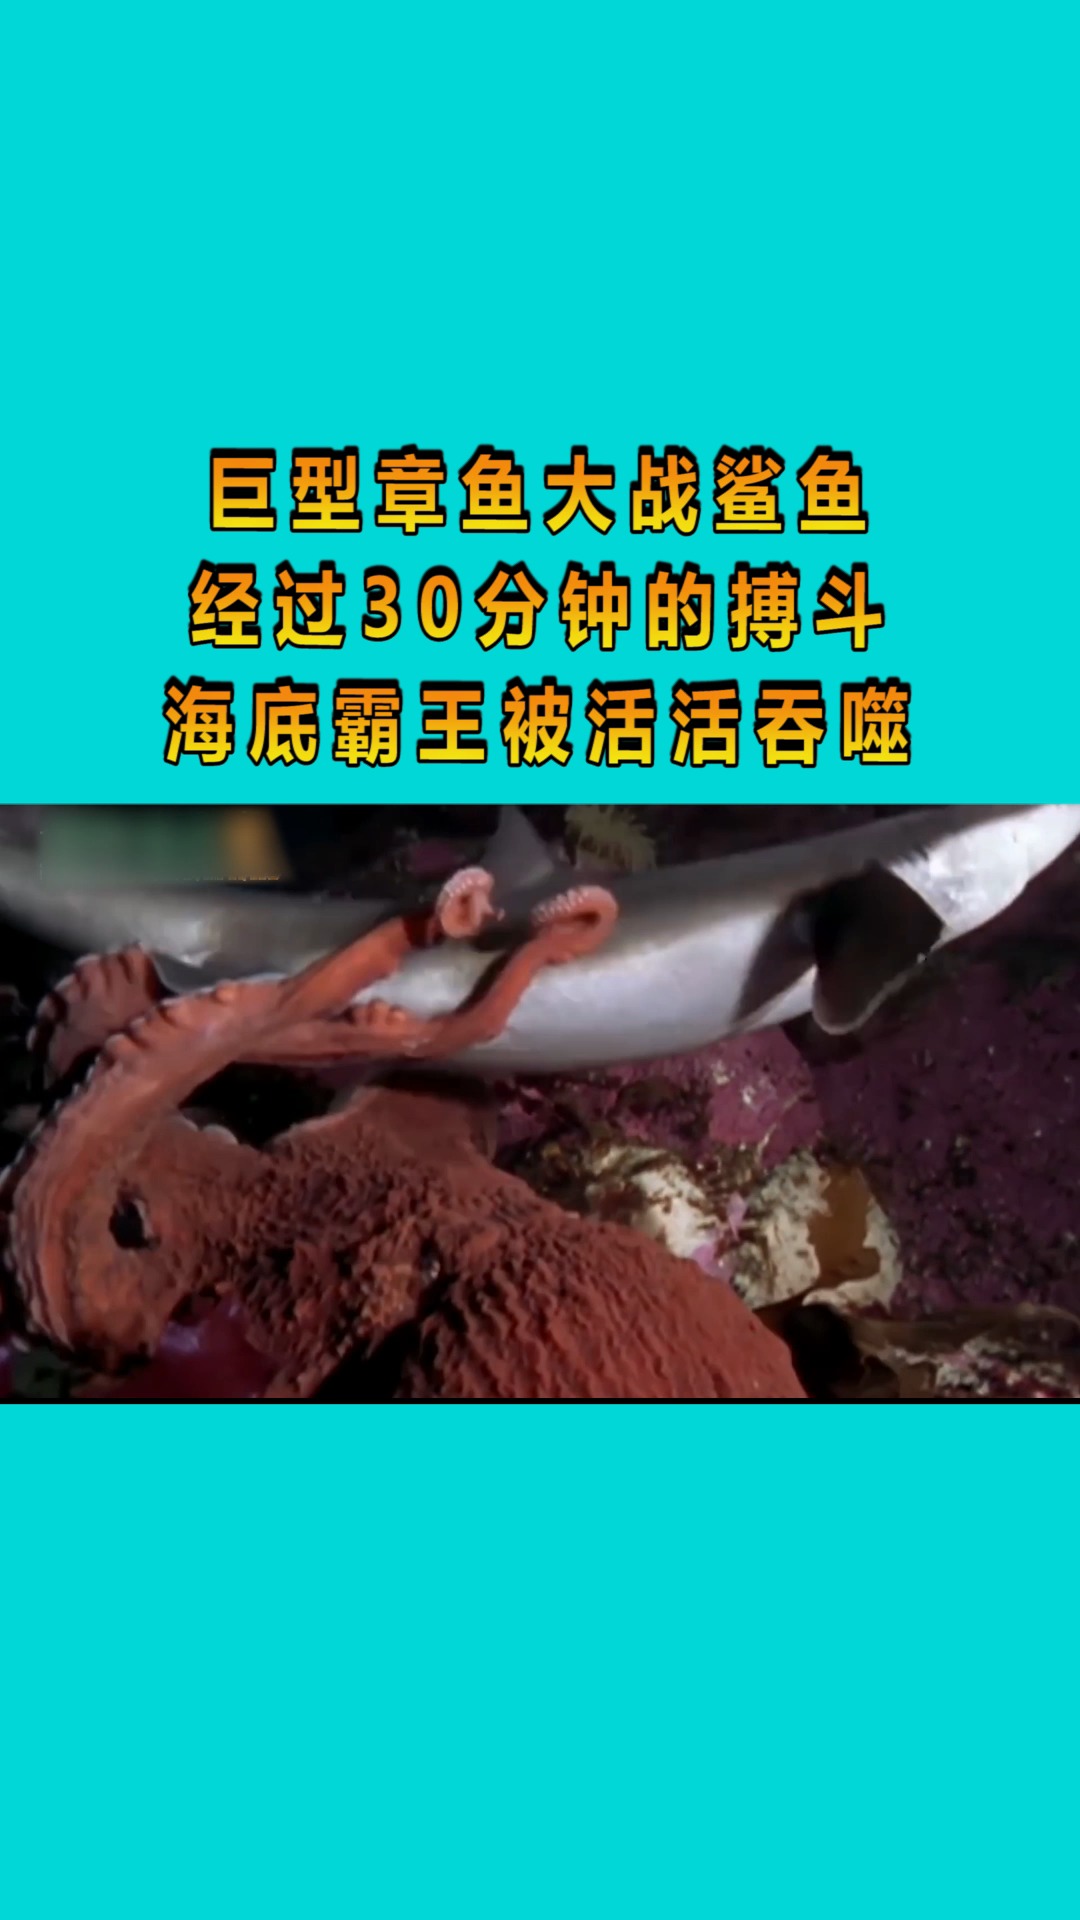 巨型章鱼大战鲨鱼,经过30分钟的搏斗,海底霸王被活活吞噬!-度小视